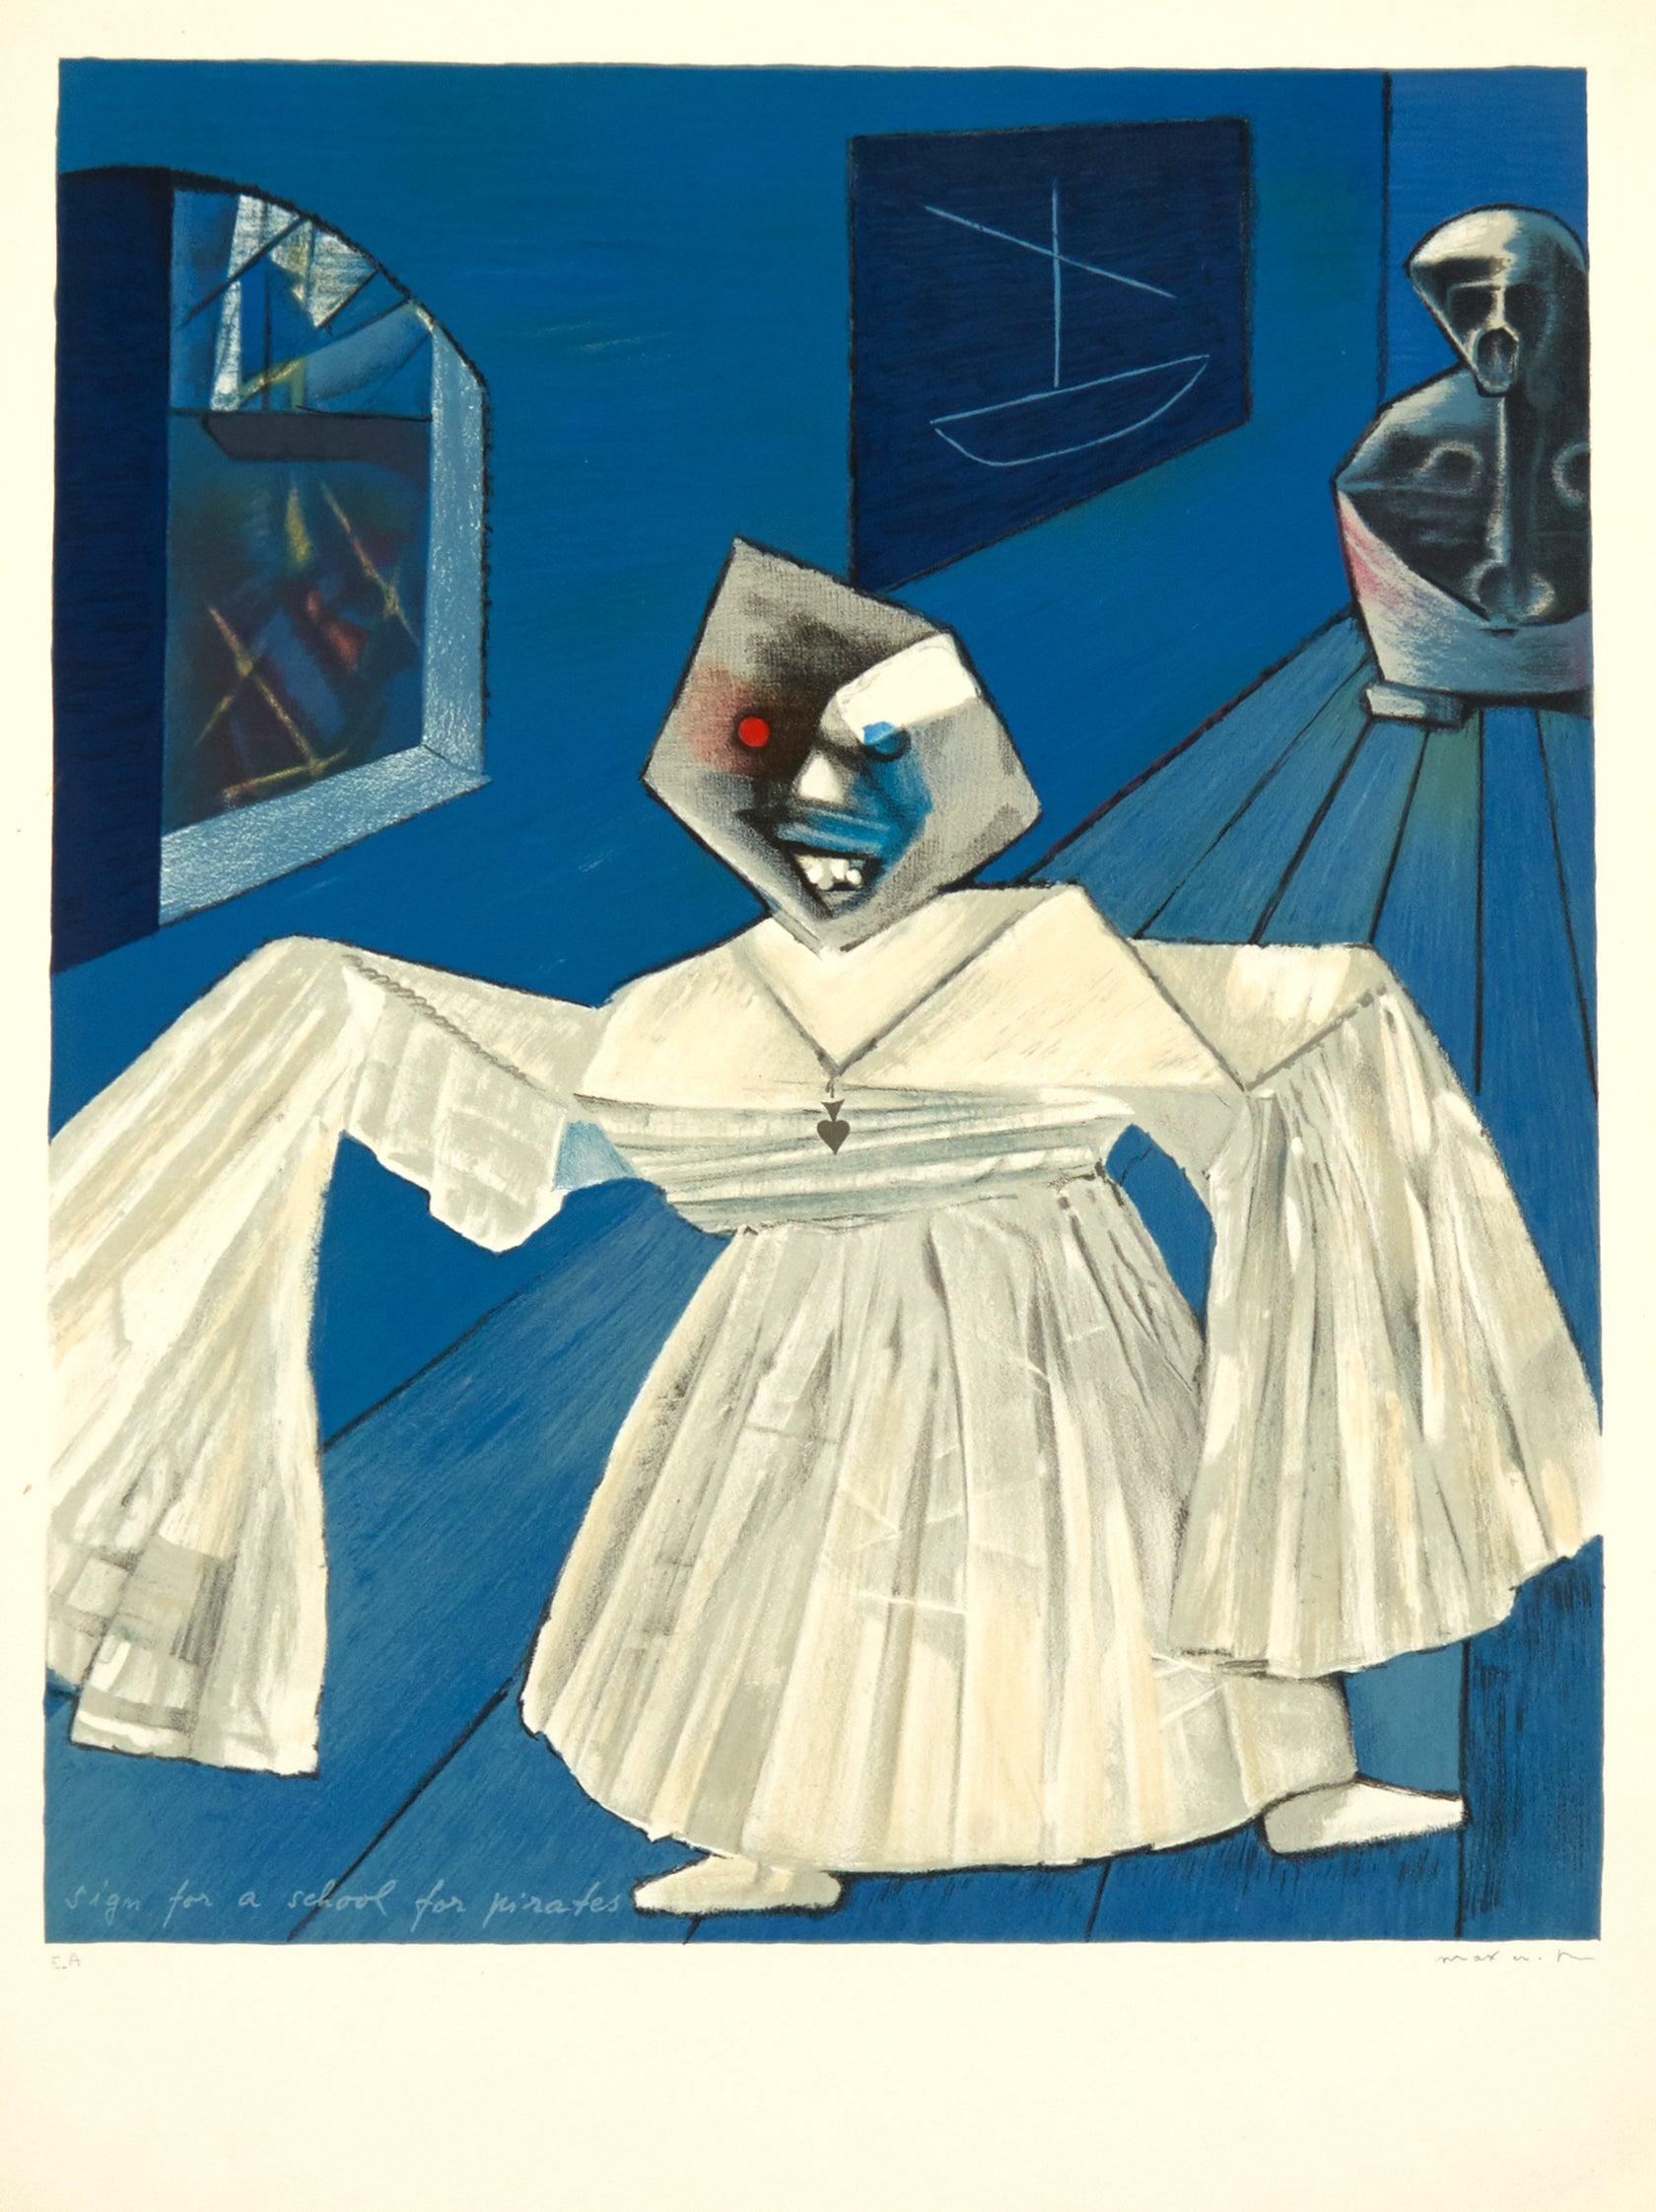 Artiste : Max Ernst

Médium : Lithographie originale, E.A. Signé, Edition de 125, 1965

Dimensions : 29 x 21.5 in, 73.66 x 54.61 cm